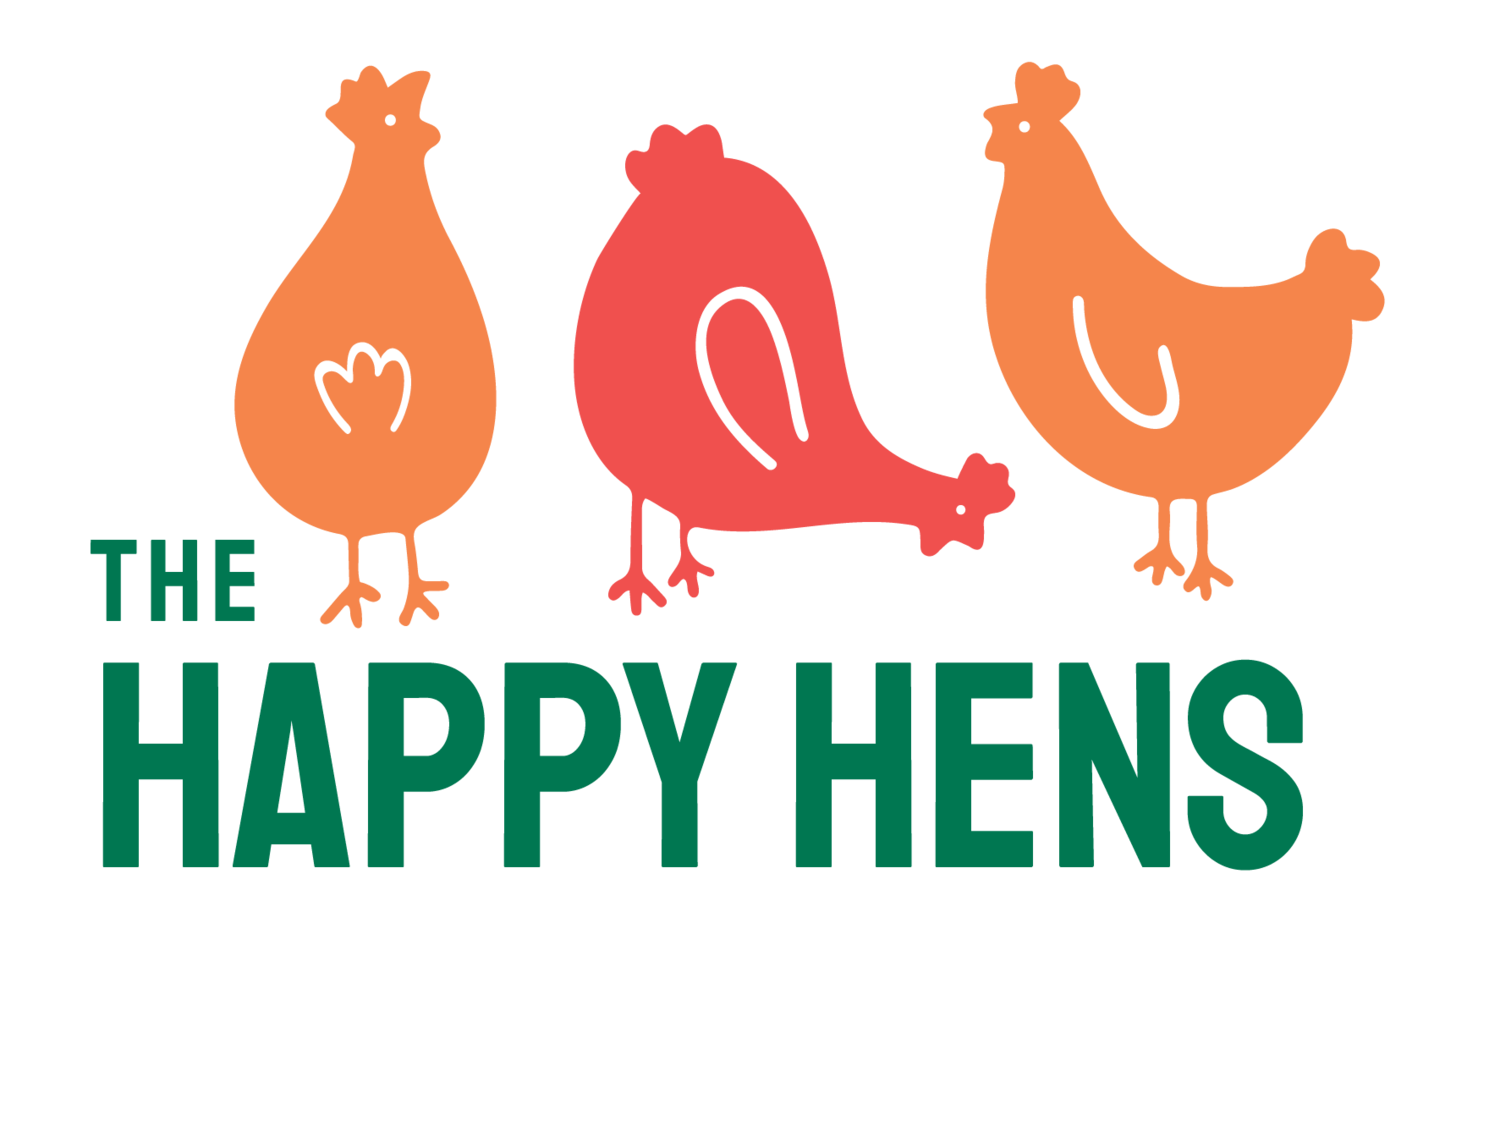 The Happy Hens